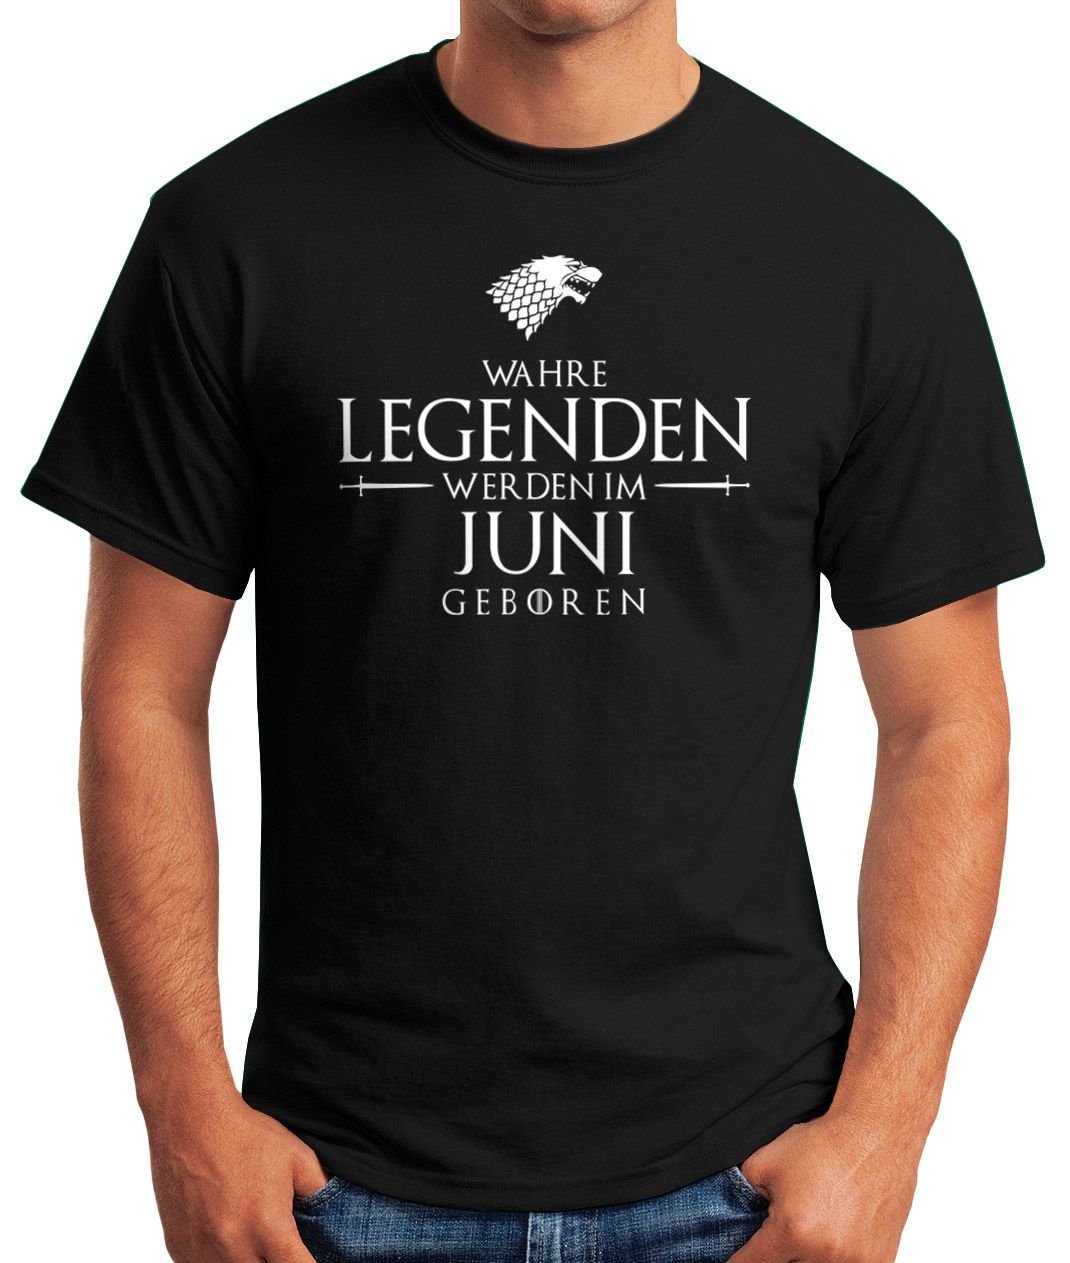 im Print mit T-Shirt Fun-Shirt Legenden werden [object geboren Wahre schwarz Moonworks® Juni MoonWorks Herren Object] Print-Shirt